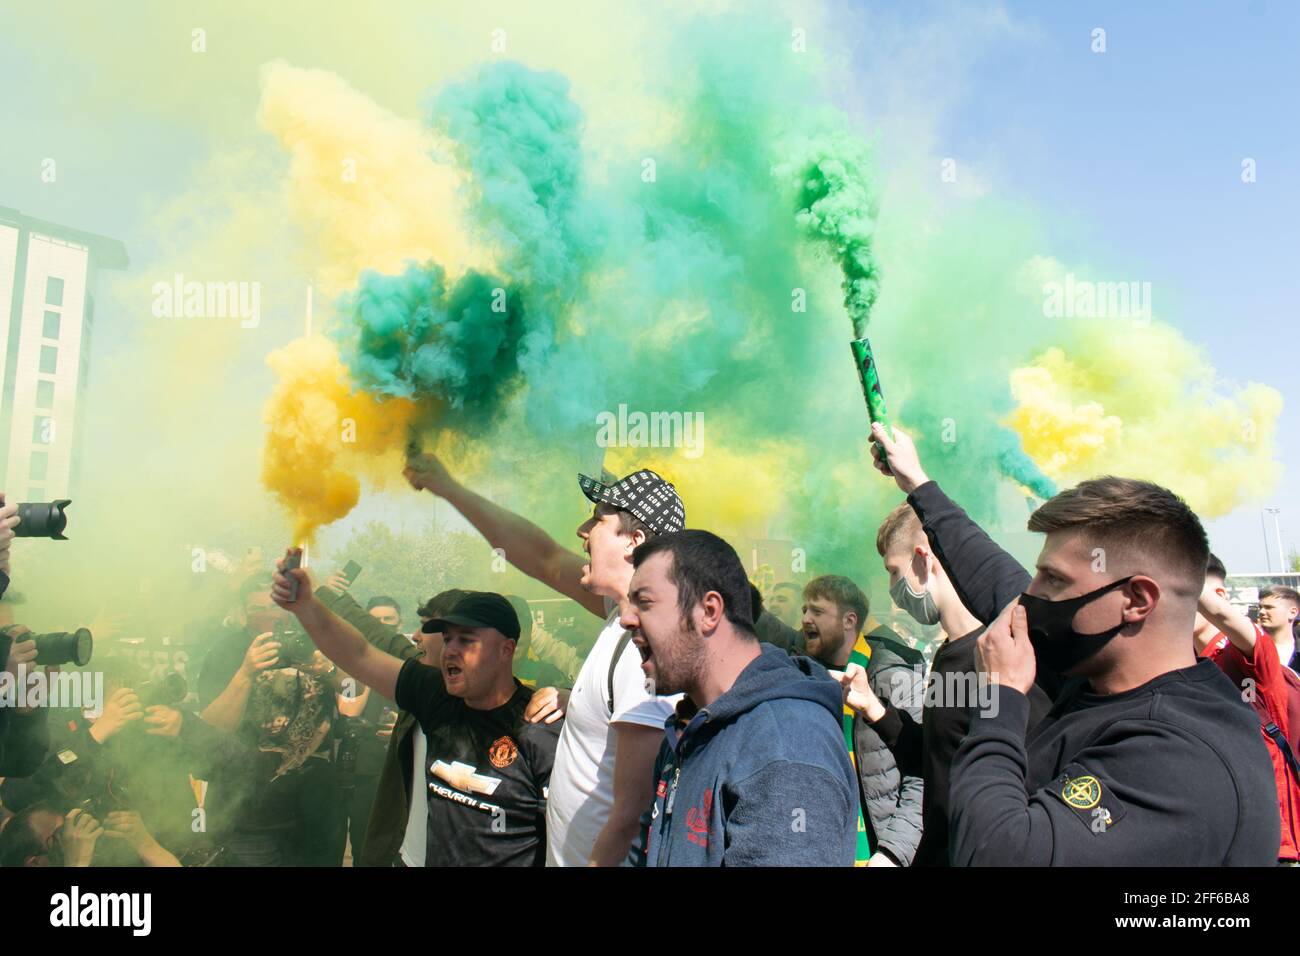 Protest gegen Glazer auf dem Old Trafford Fußballplatz. Unterstützer halten grünen und goldenen Rauch aufflackern. Manchester United Stadium, Großbritannien. Stockfoto